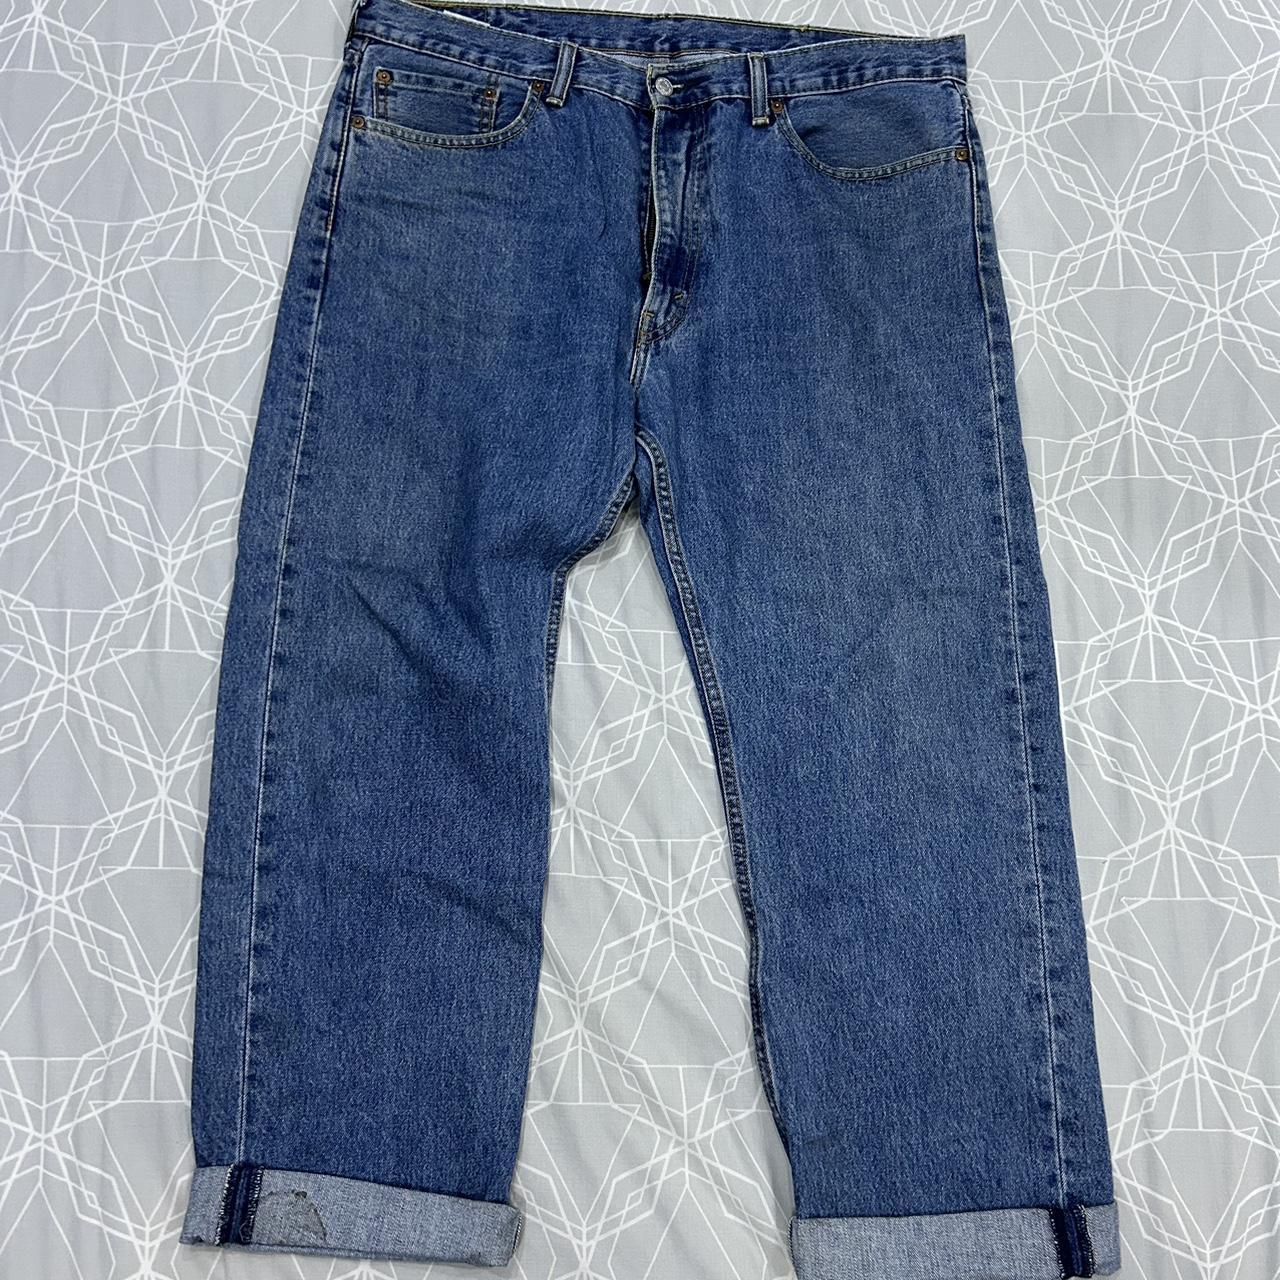 Levi’s 505 Jeans 🔵 Size: Waist 38, Length 30... - Depop